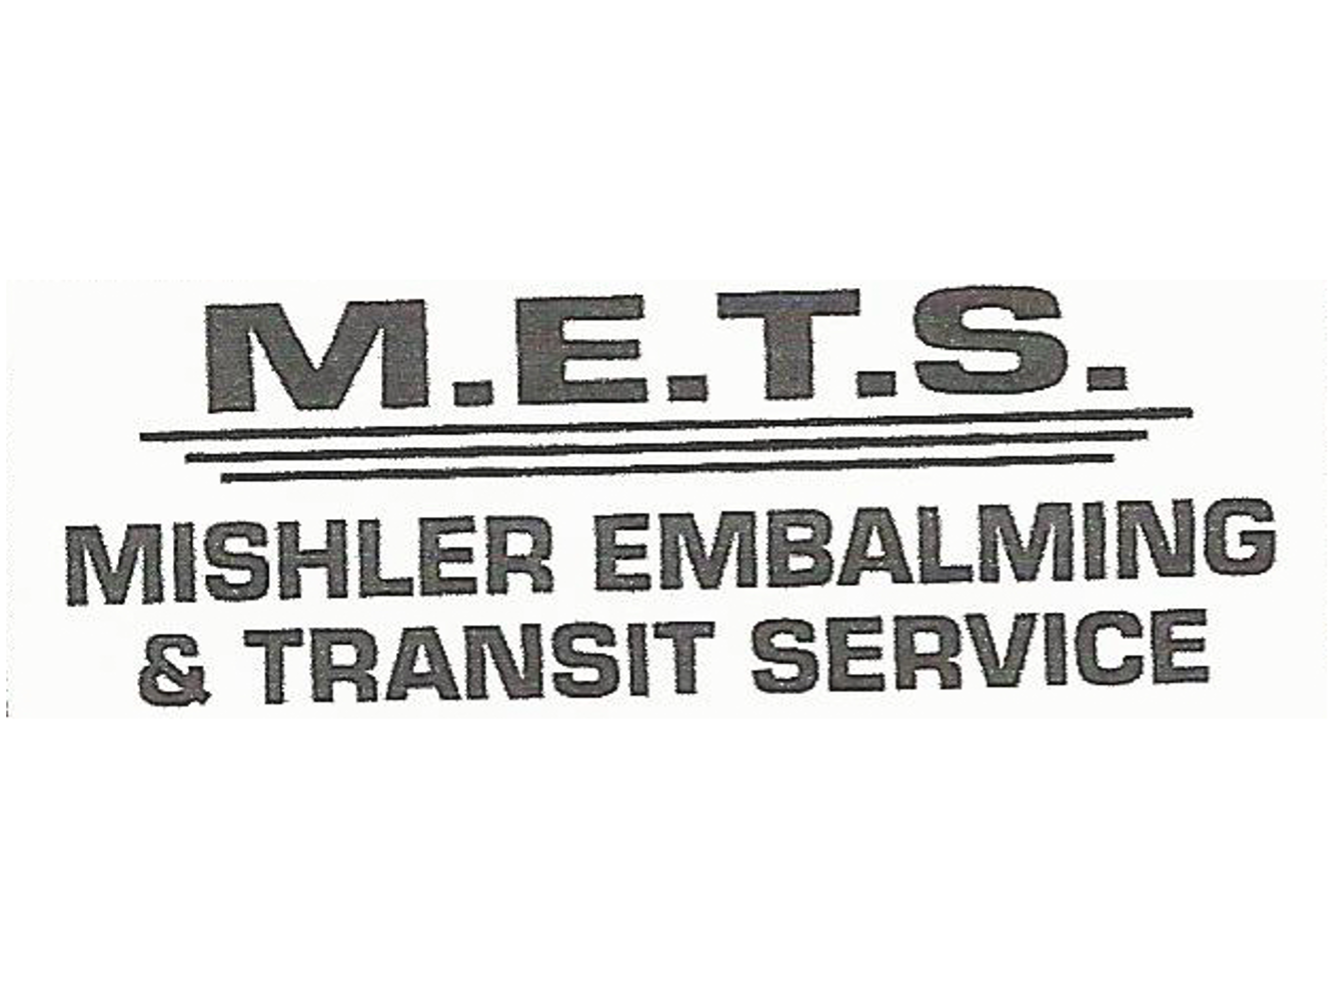 Mishler Embalming & Transit Service